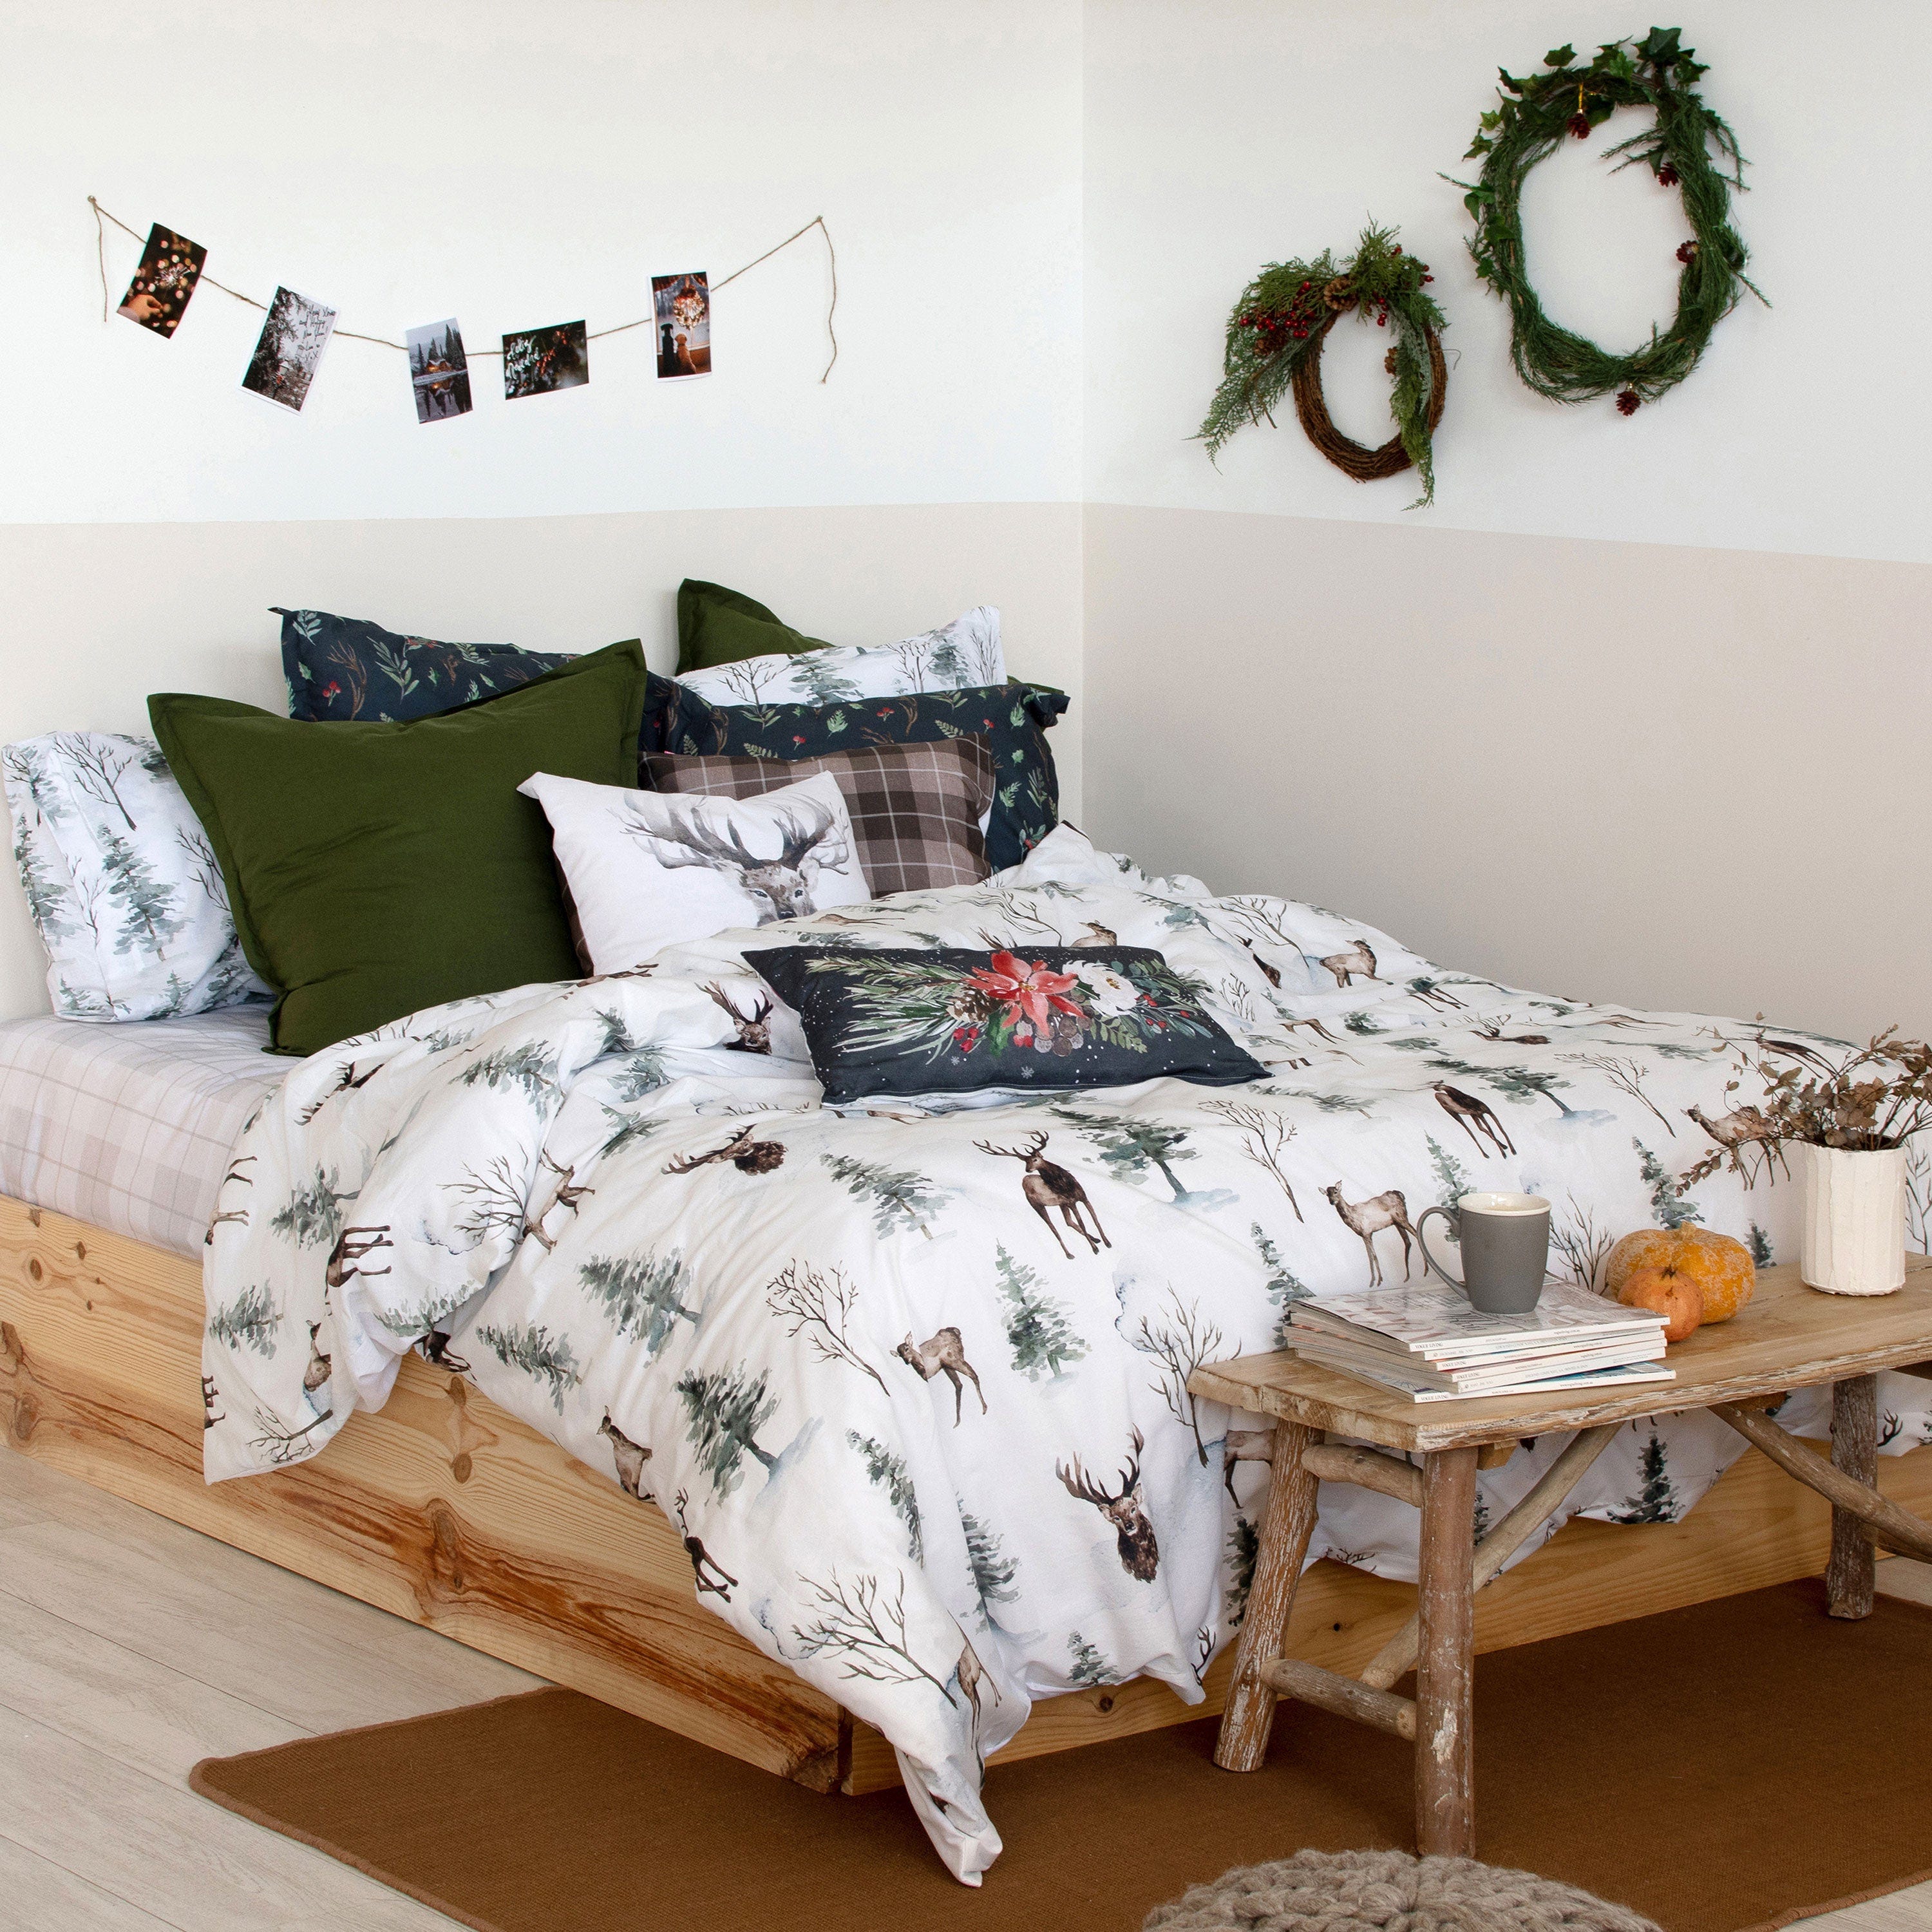 Cuáles son las mejores fundas nórdicas de cama de 150?